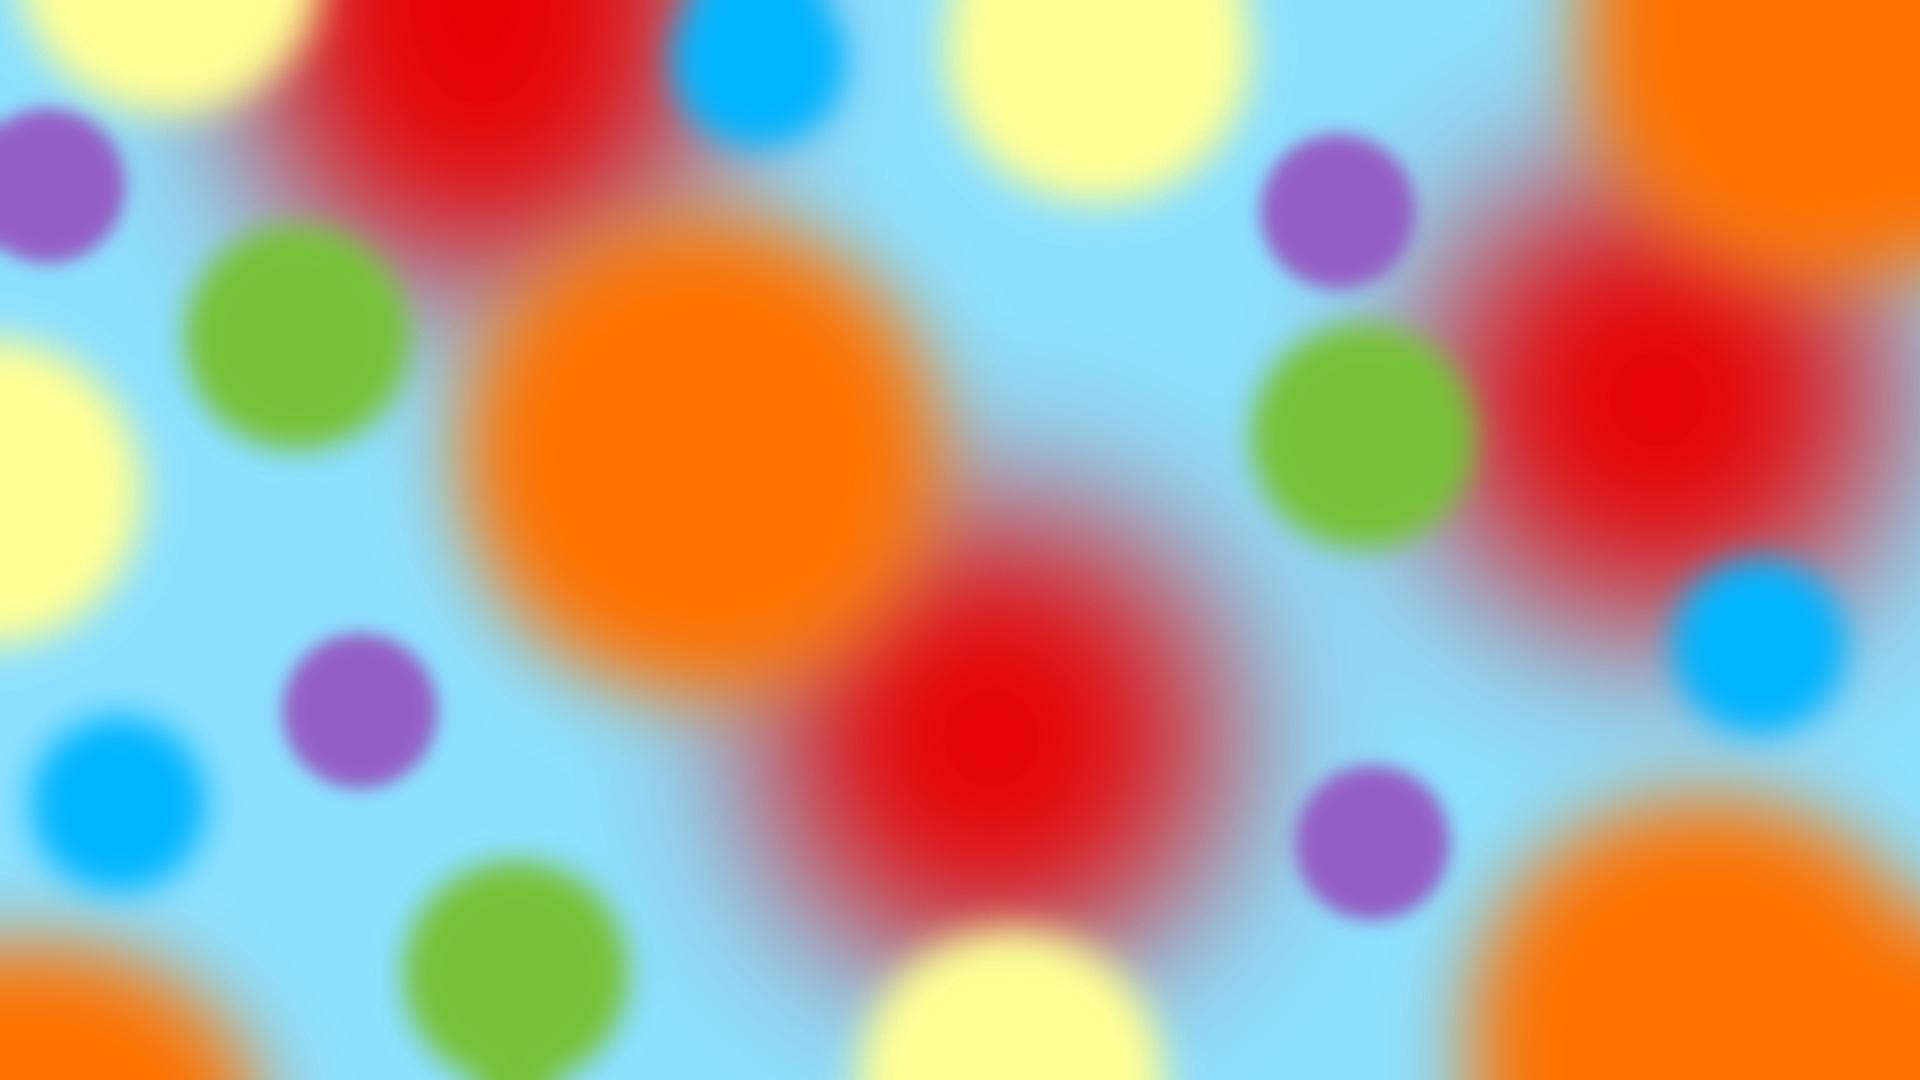 Download wallpaper 1920x1080 balls, range, color, diffusion